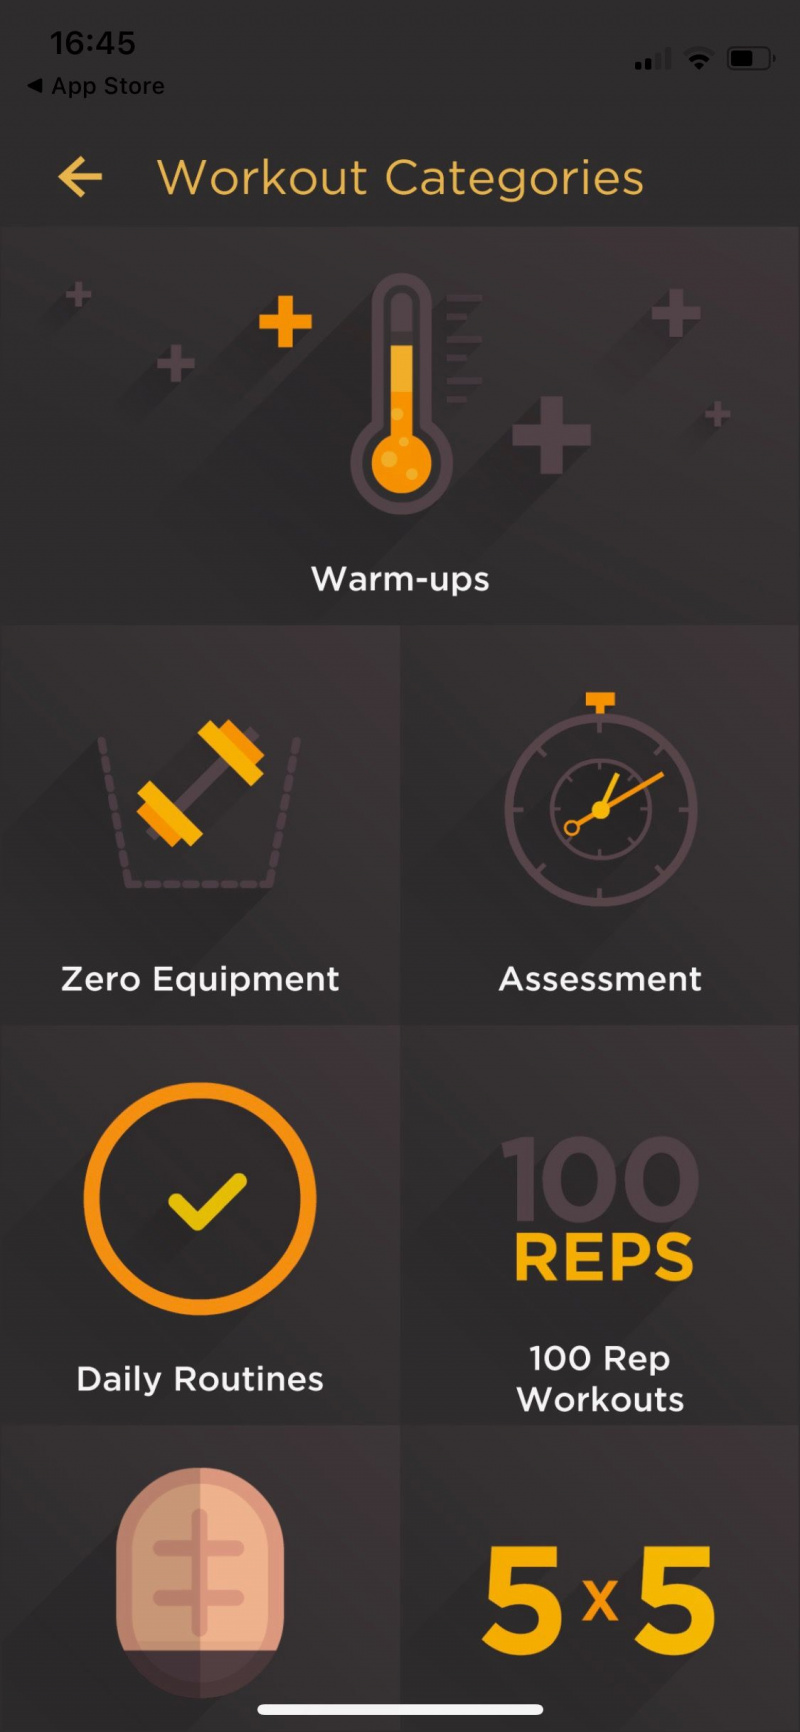   Zrzut ekranu aplikacji Al Kavado przedstawiający kategorie treningów